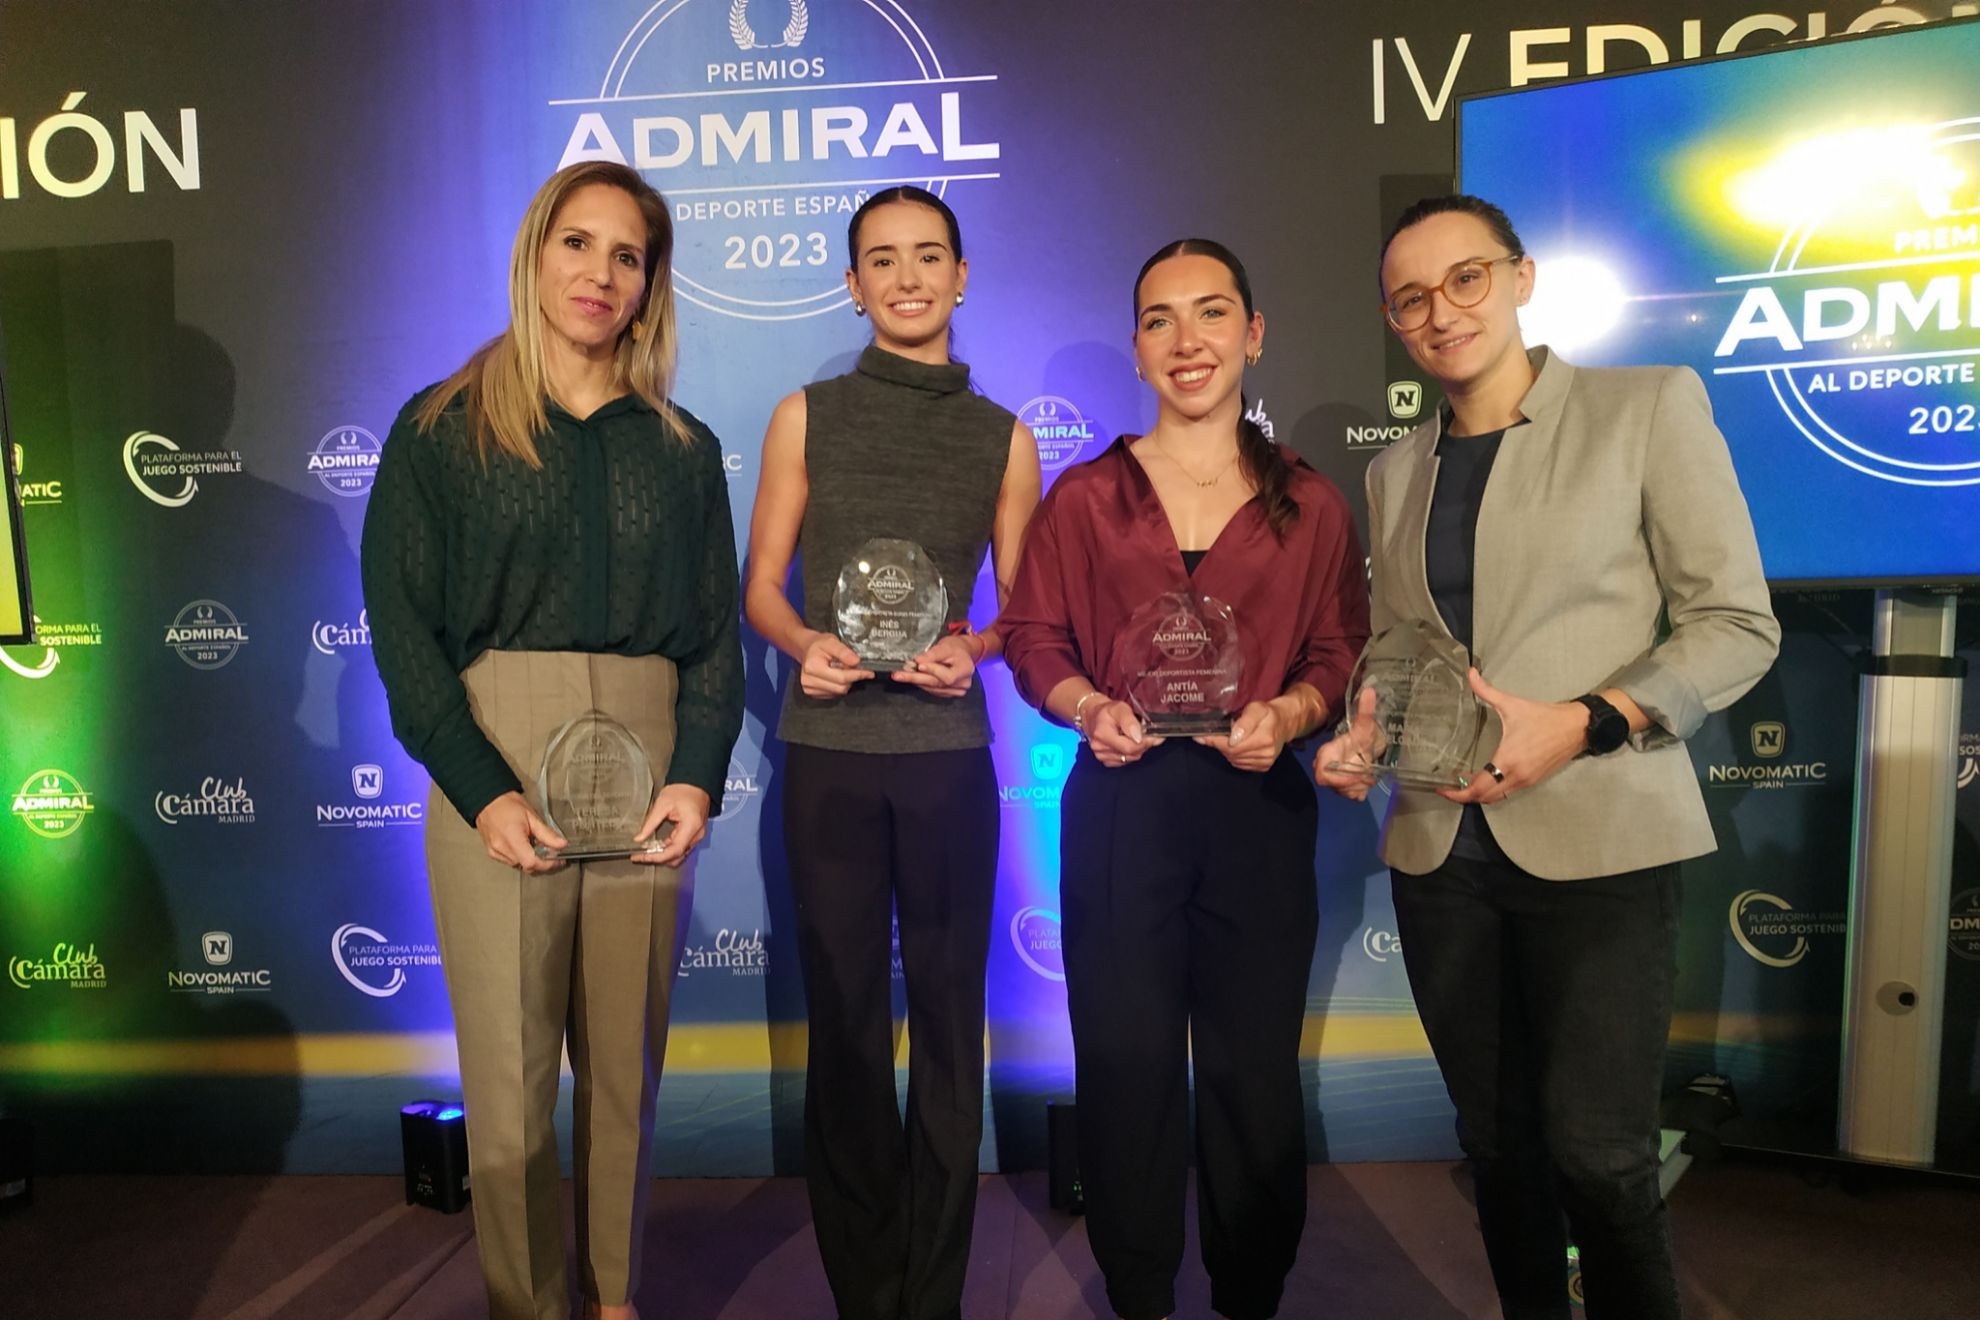 Teresa Portela, Inés Bergua, Antía Jácome y María Delgado en la gala de los Premios Admiral/Foto: @ladeporteca